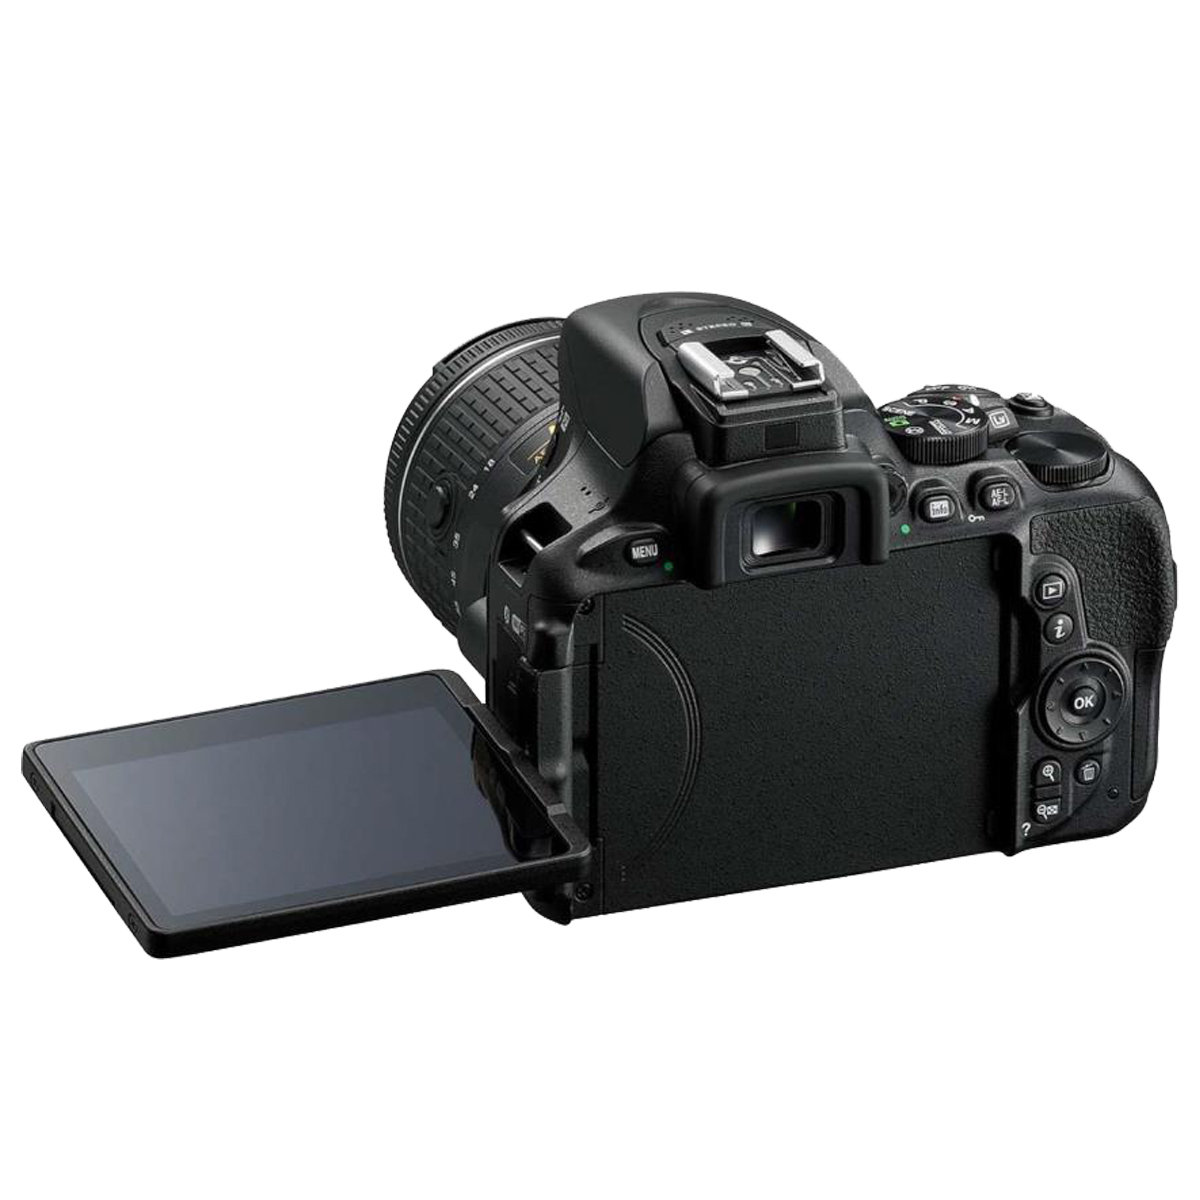 DSLR-Kamera 18-55 VR D5600 AF-P Black, NIKON LCD, WLAN- Spiegelreflexkamera mm f/3.5-5.6G Objektiv +